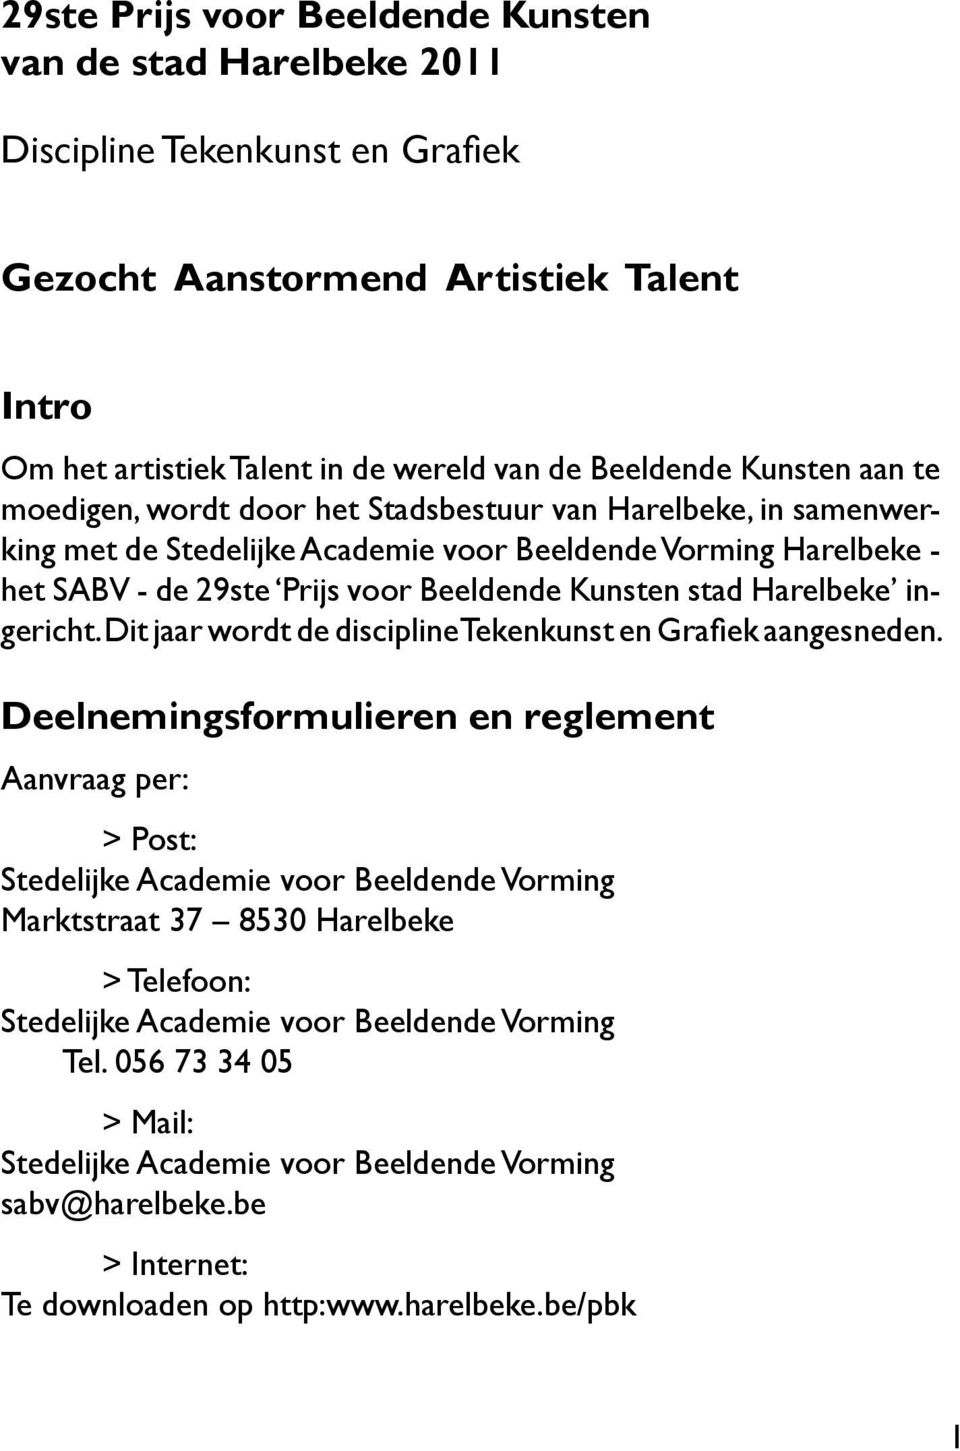 29ste Prijs voor Beeldende Kunsten stad Harelbeke ingericht. Dit jaar wordt de discipline Tekenkunst en Grafiek aangesneden.